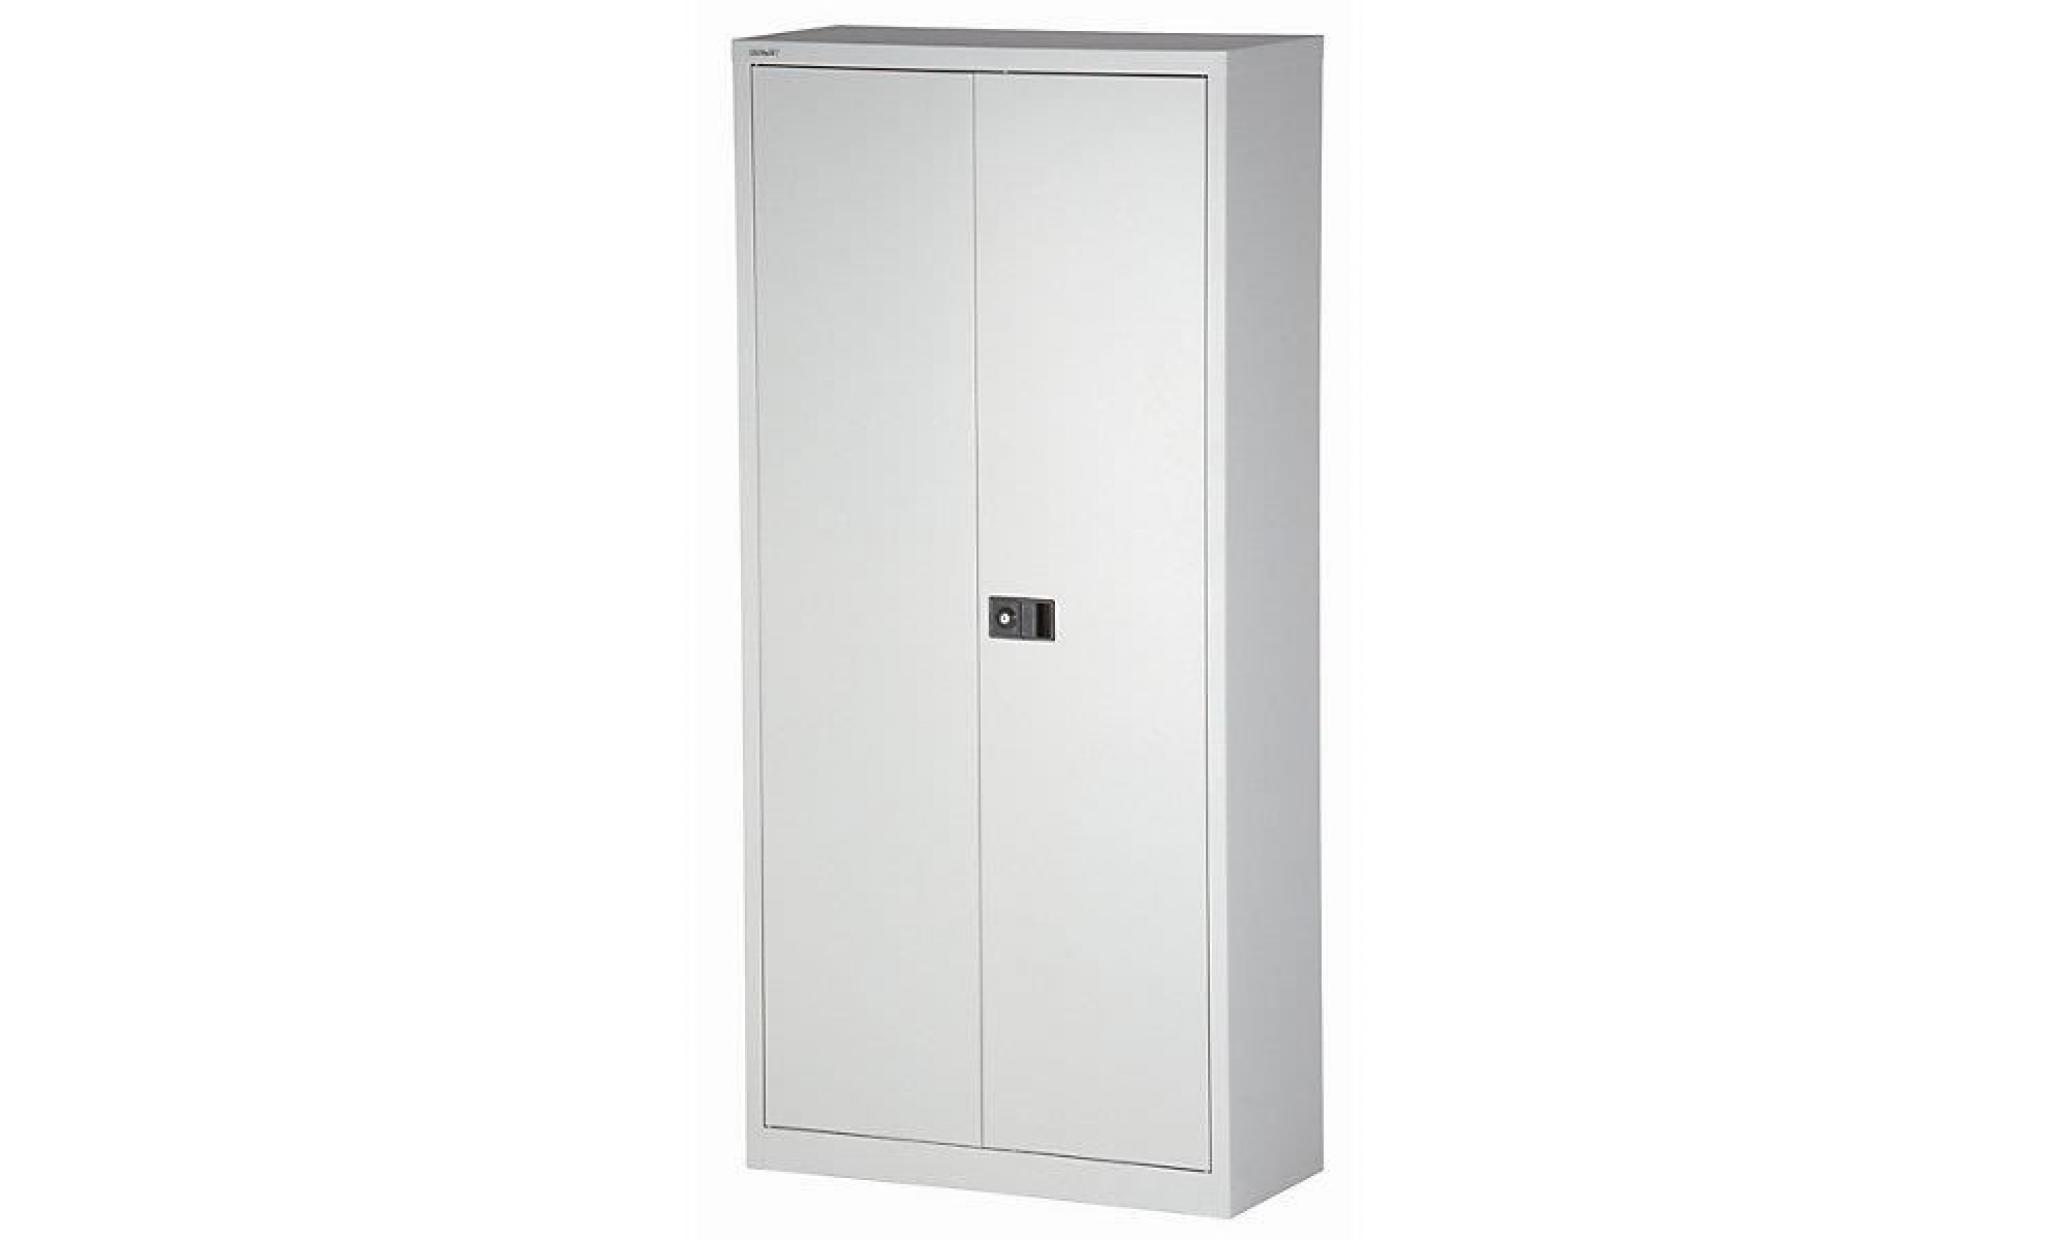 bisley armoire à portes battantes universal   vestiaire gris clair / bleu oxford   armoire d'atelier armoire de bureau armoire pas cher